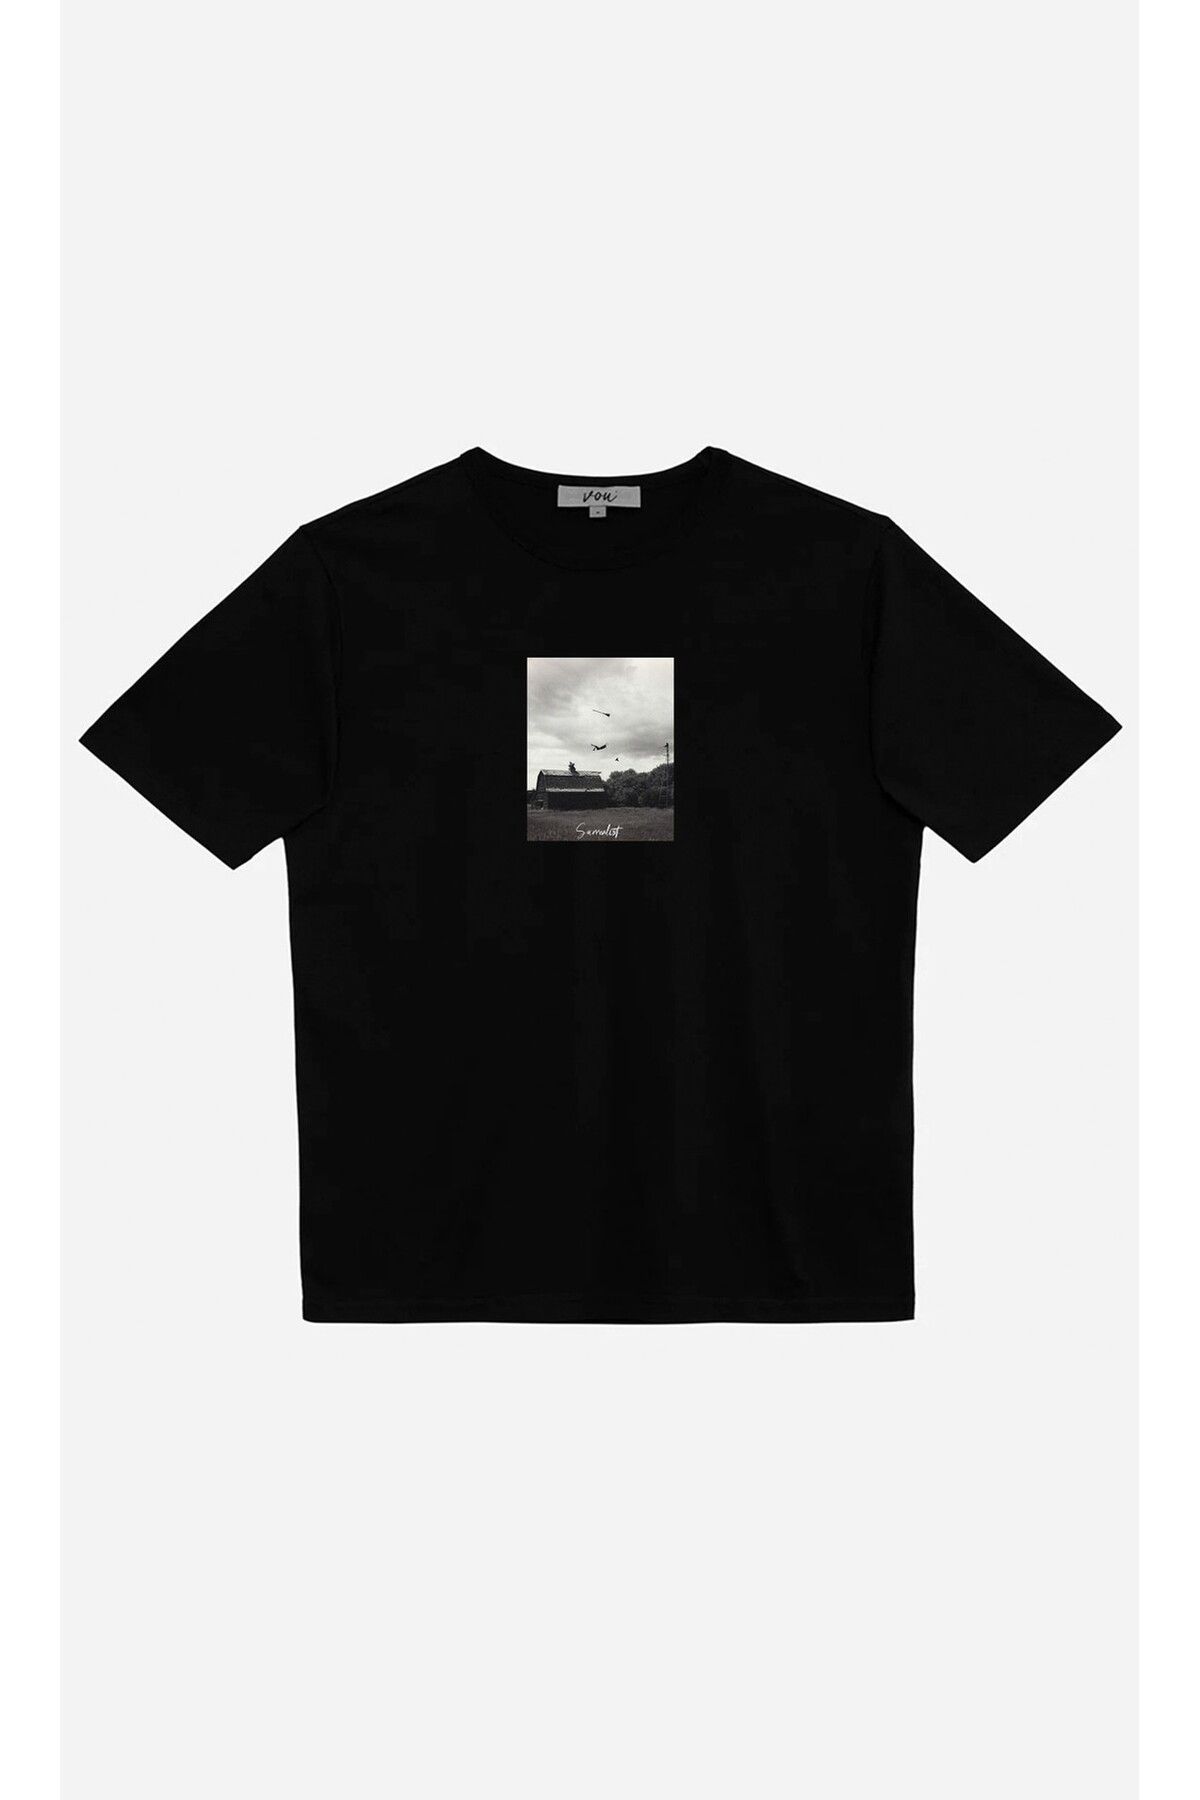 VOU 1060- Surrealist Oversize Unisex T-Shirt